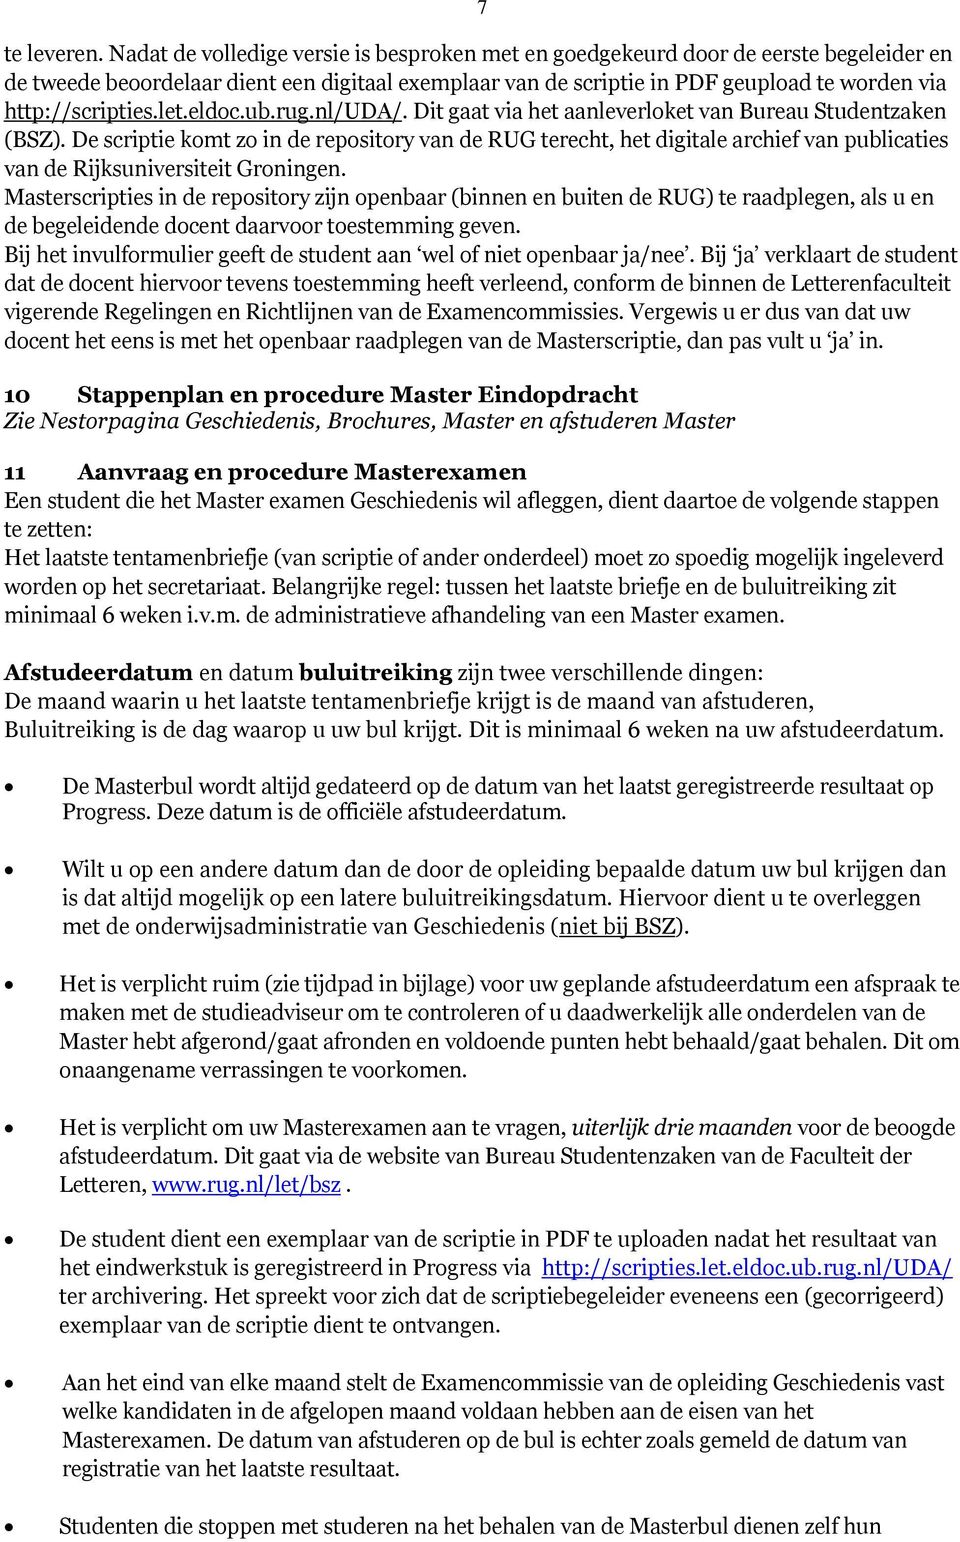 http://scripties.let.eldoc.ub.rug.nl/uda/. Dit gaat via het aanleverloket van Bureau Studentzaken (BSZ).